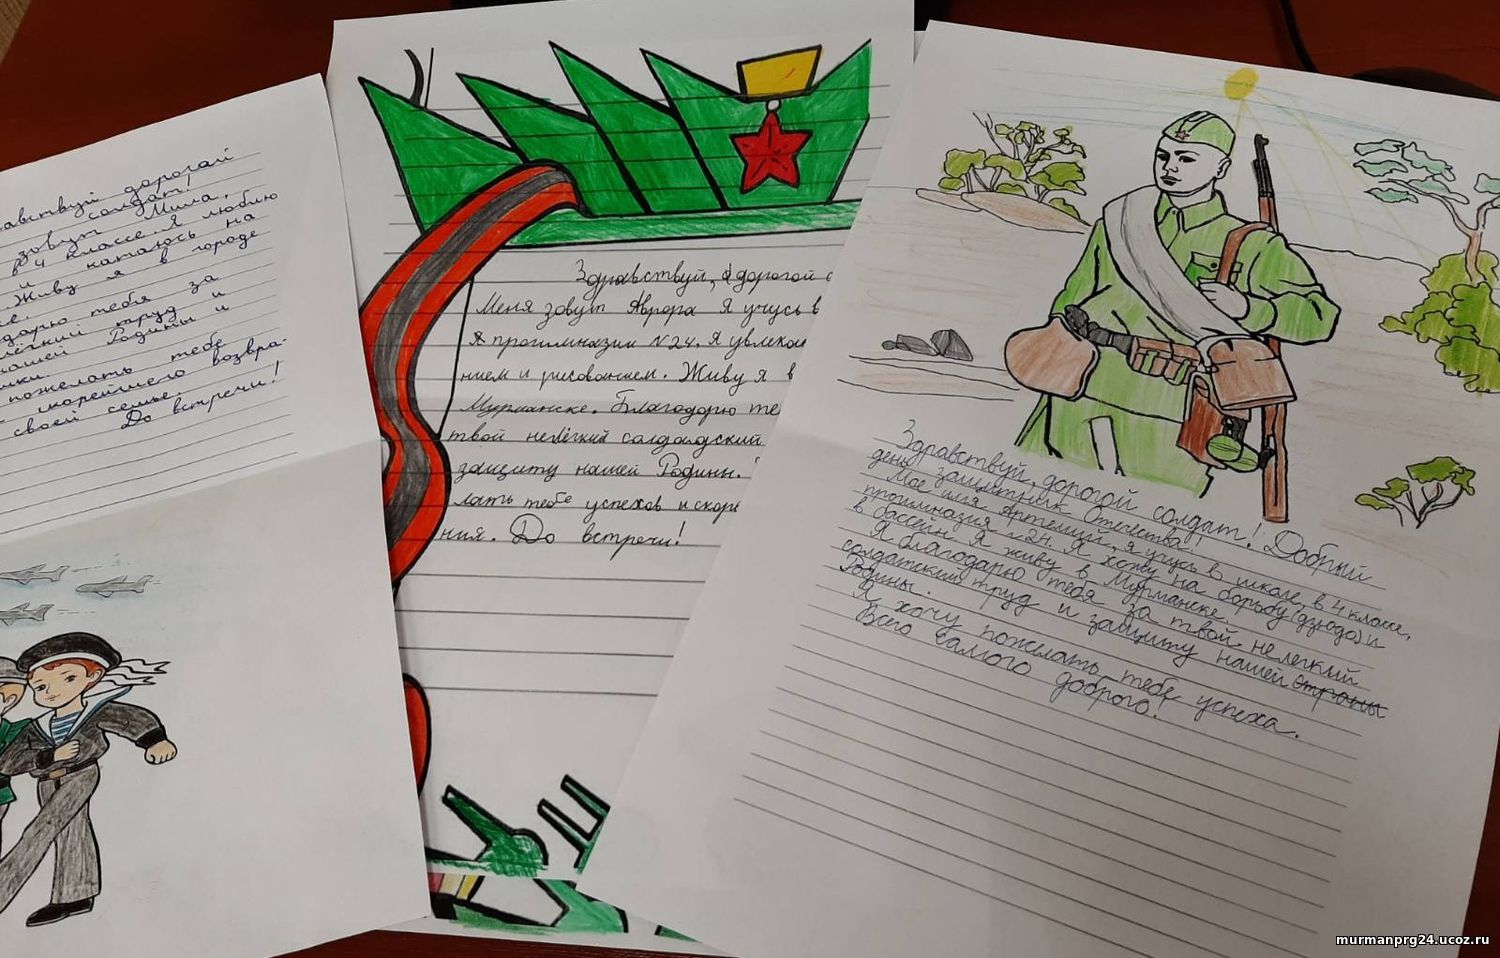 Делаем письмо солдату. Письма солдата +с/о. Письмо солдату от школьника. Красивое письмо солдату. Акция письмо солдату от школьника.